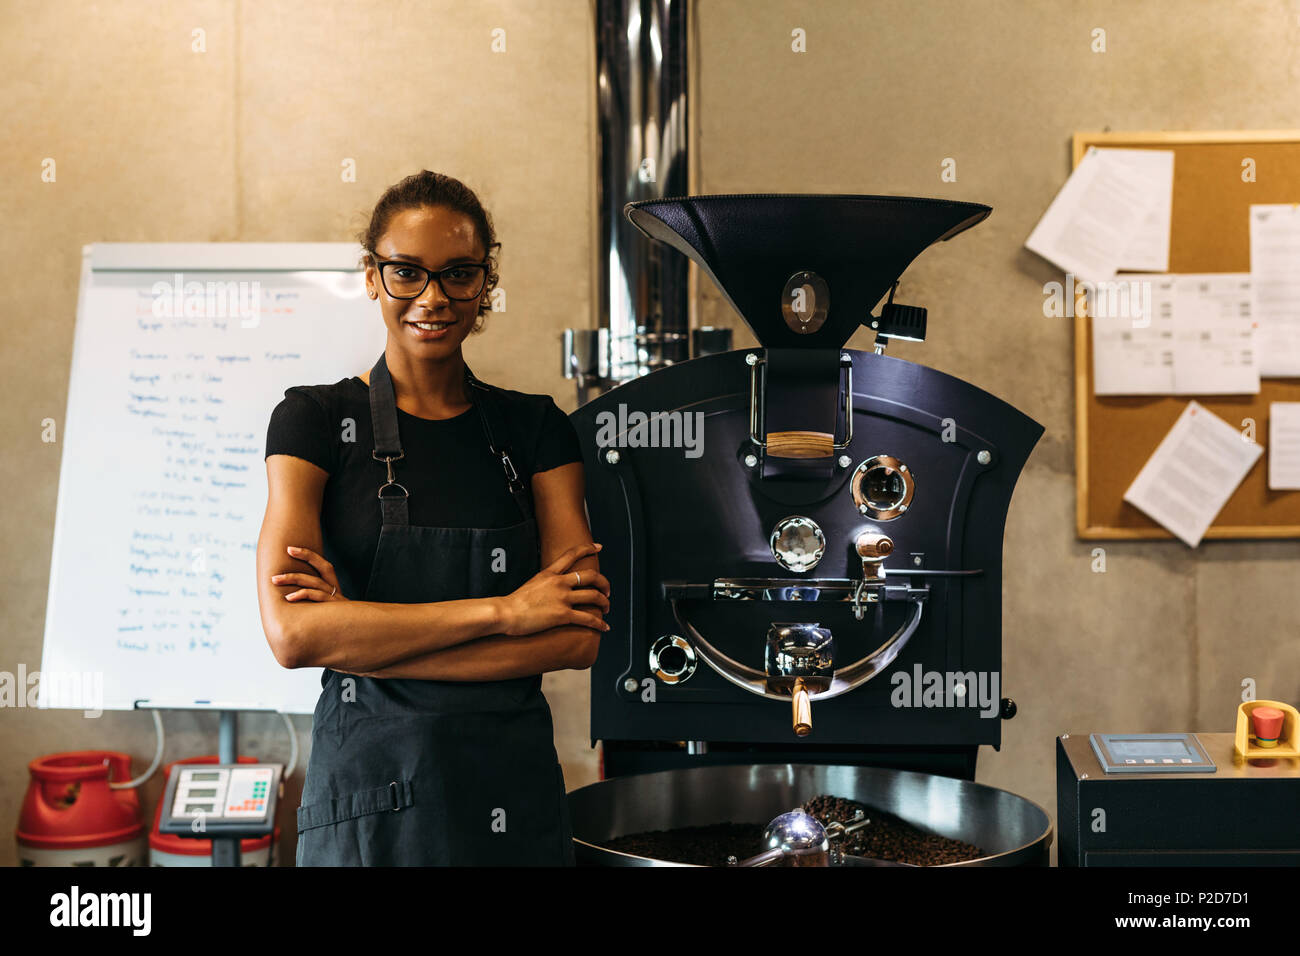 Weibliche barista stand neben Kaffee Röstung Maschine im Coffee Shop. Lächelnd Geschäft Inhaber an einer Kamera suchen. Stockfoto